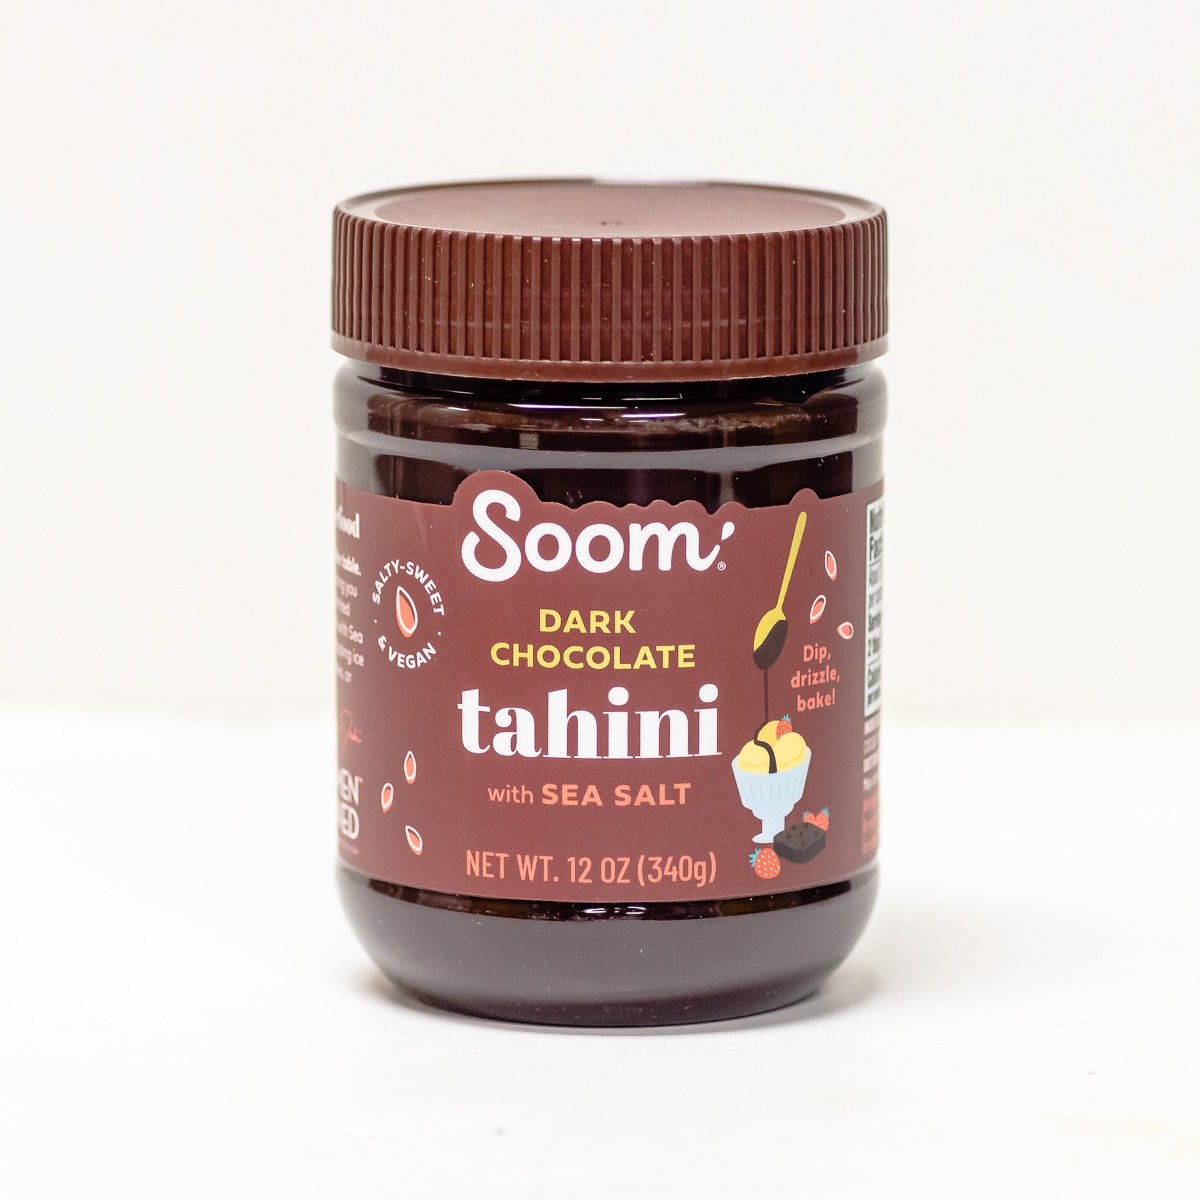 Soom dark chocolate tahini